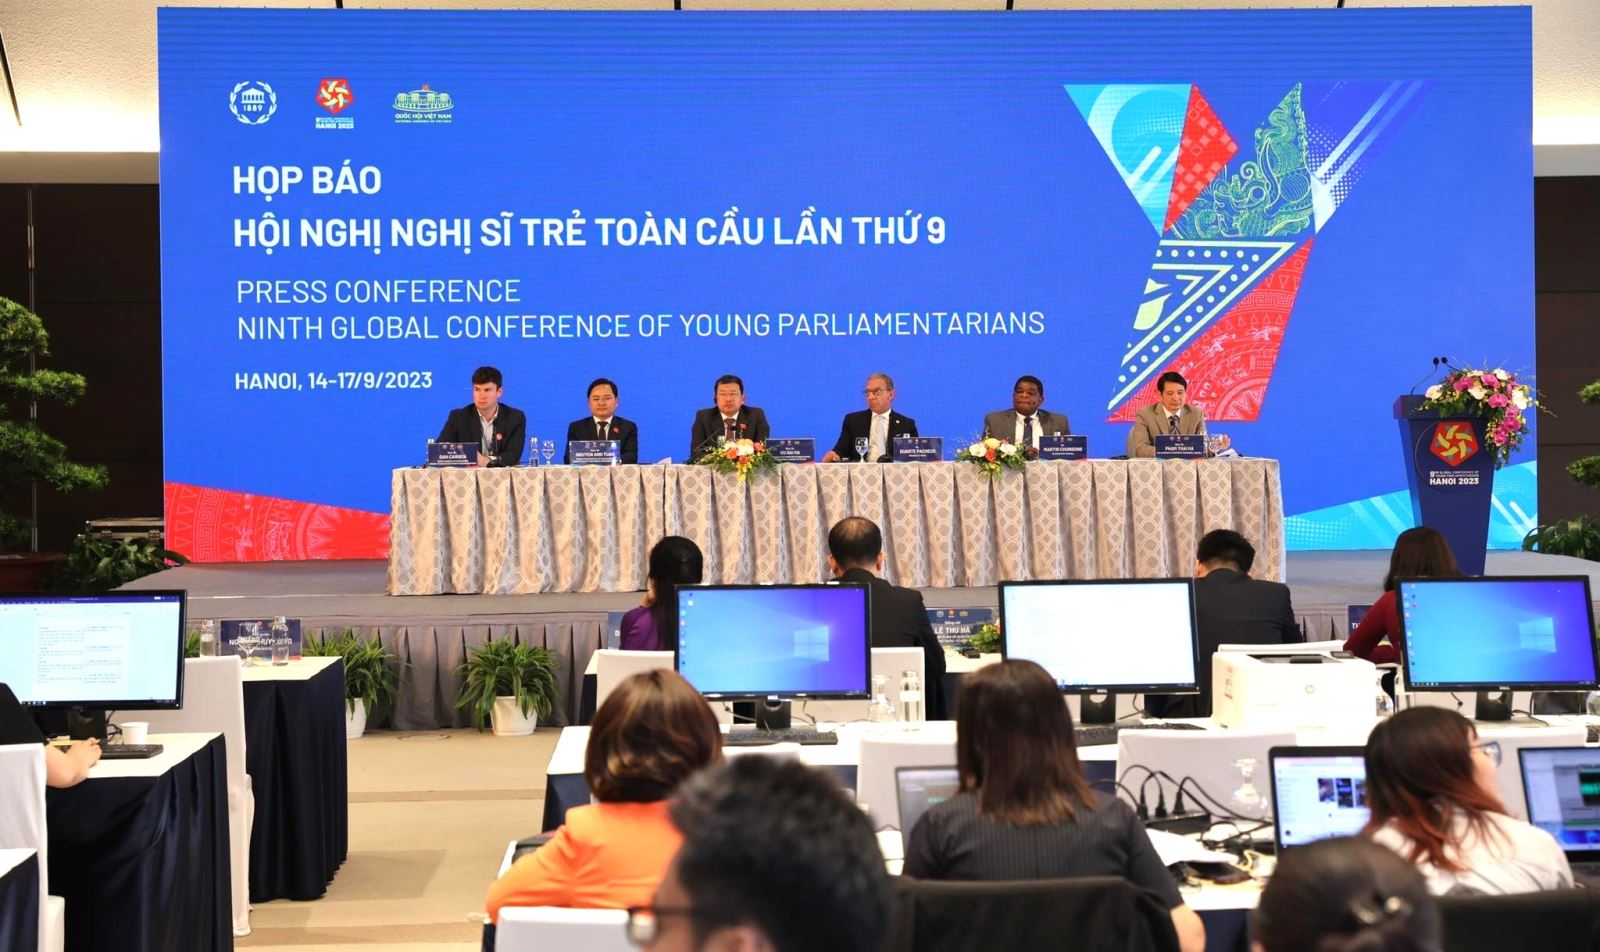 Hội nghị Nghị sĩ trẻ do Việt Nam tổ chức đã “phá nhiều kỷ lục” - Ảnh 1.